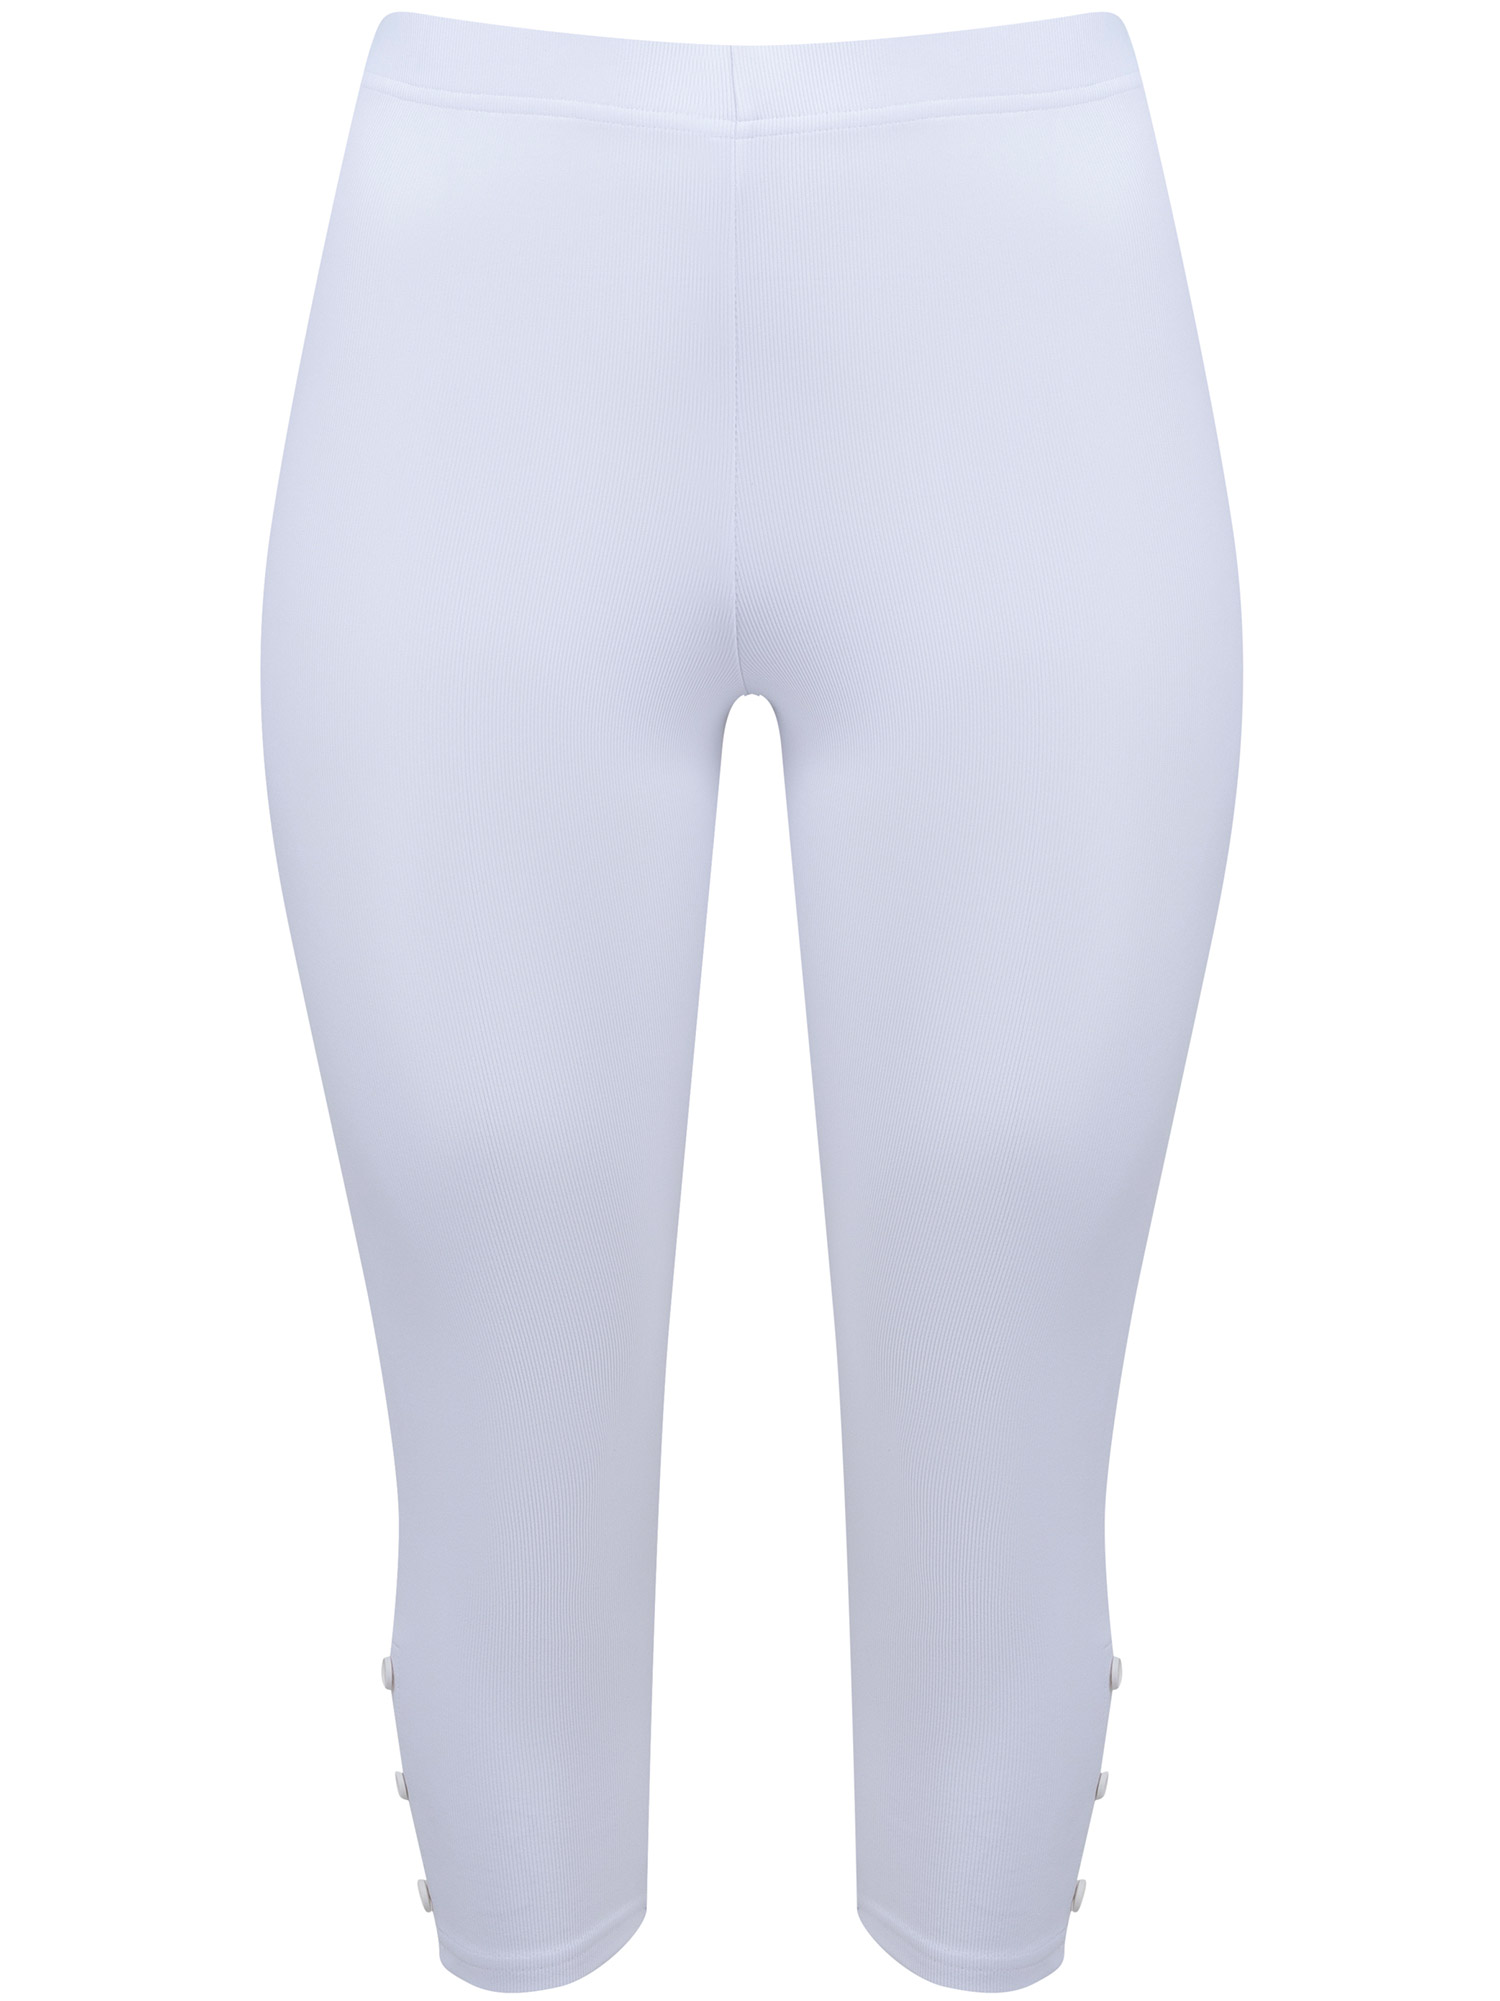 Annika - Hvite 3/4 leggings med rillet struktur fra Pont Neuf